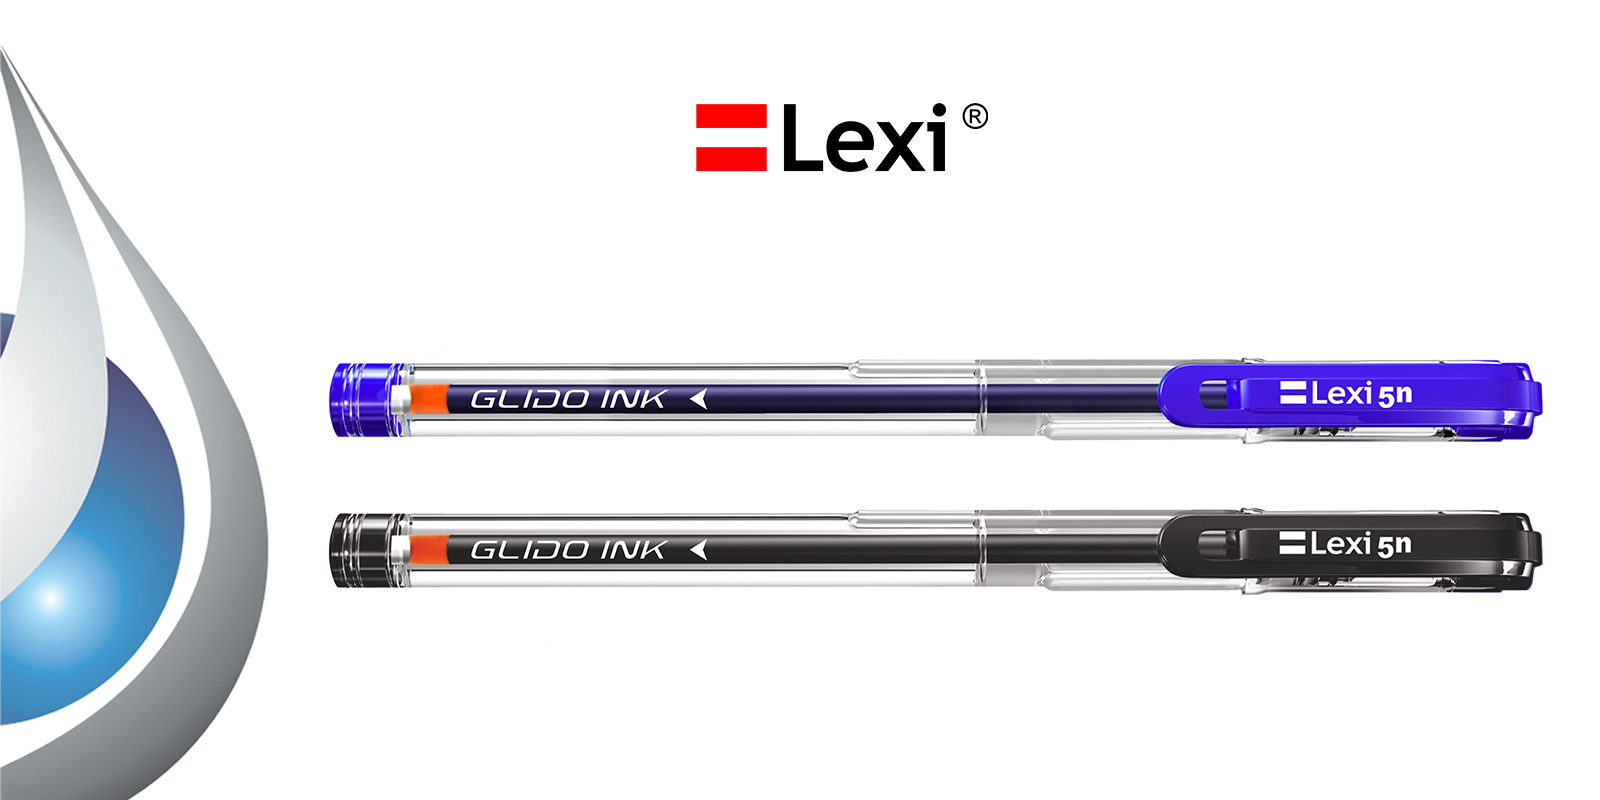 Lexi Pen product